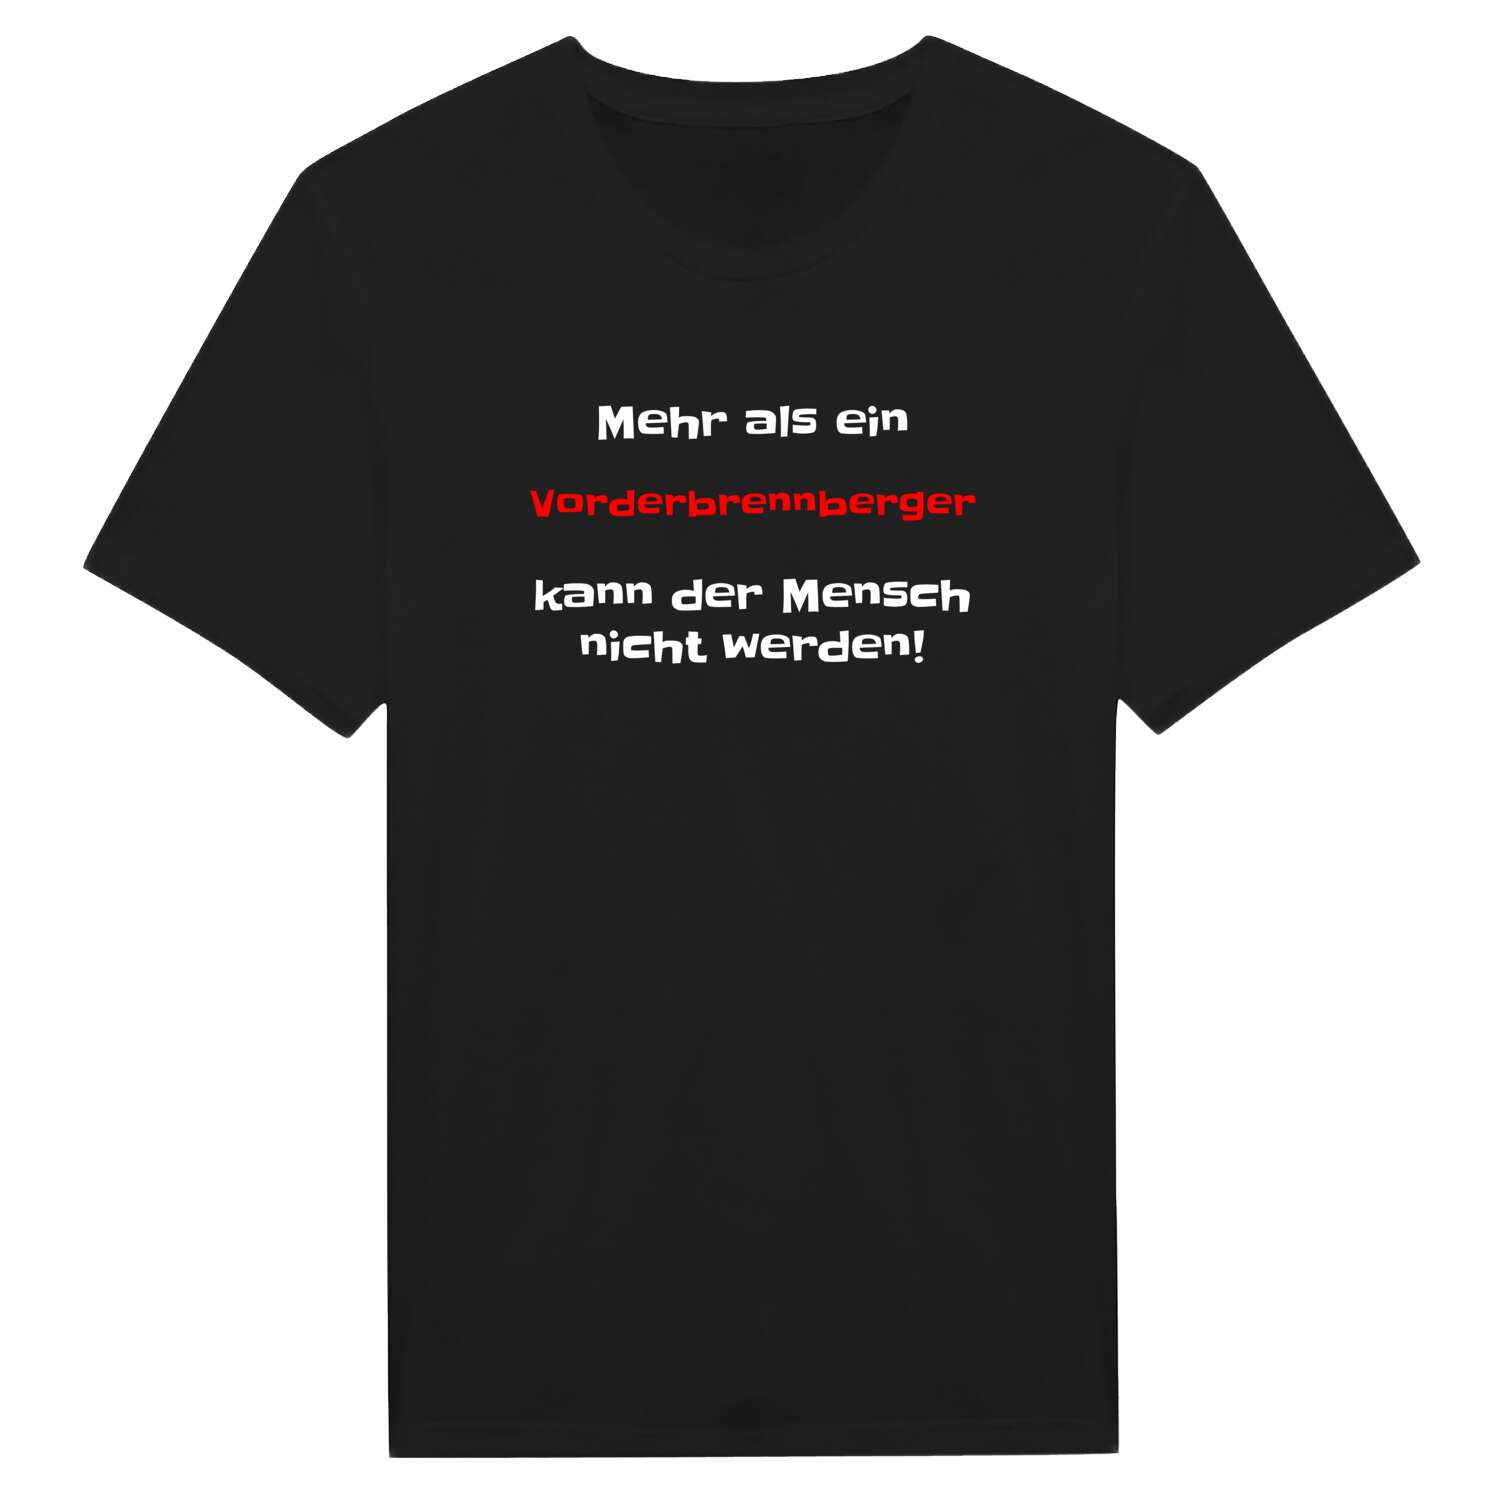 Vorderbrennberg T-Shirt »Mehr als ein«